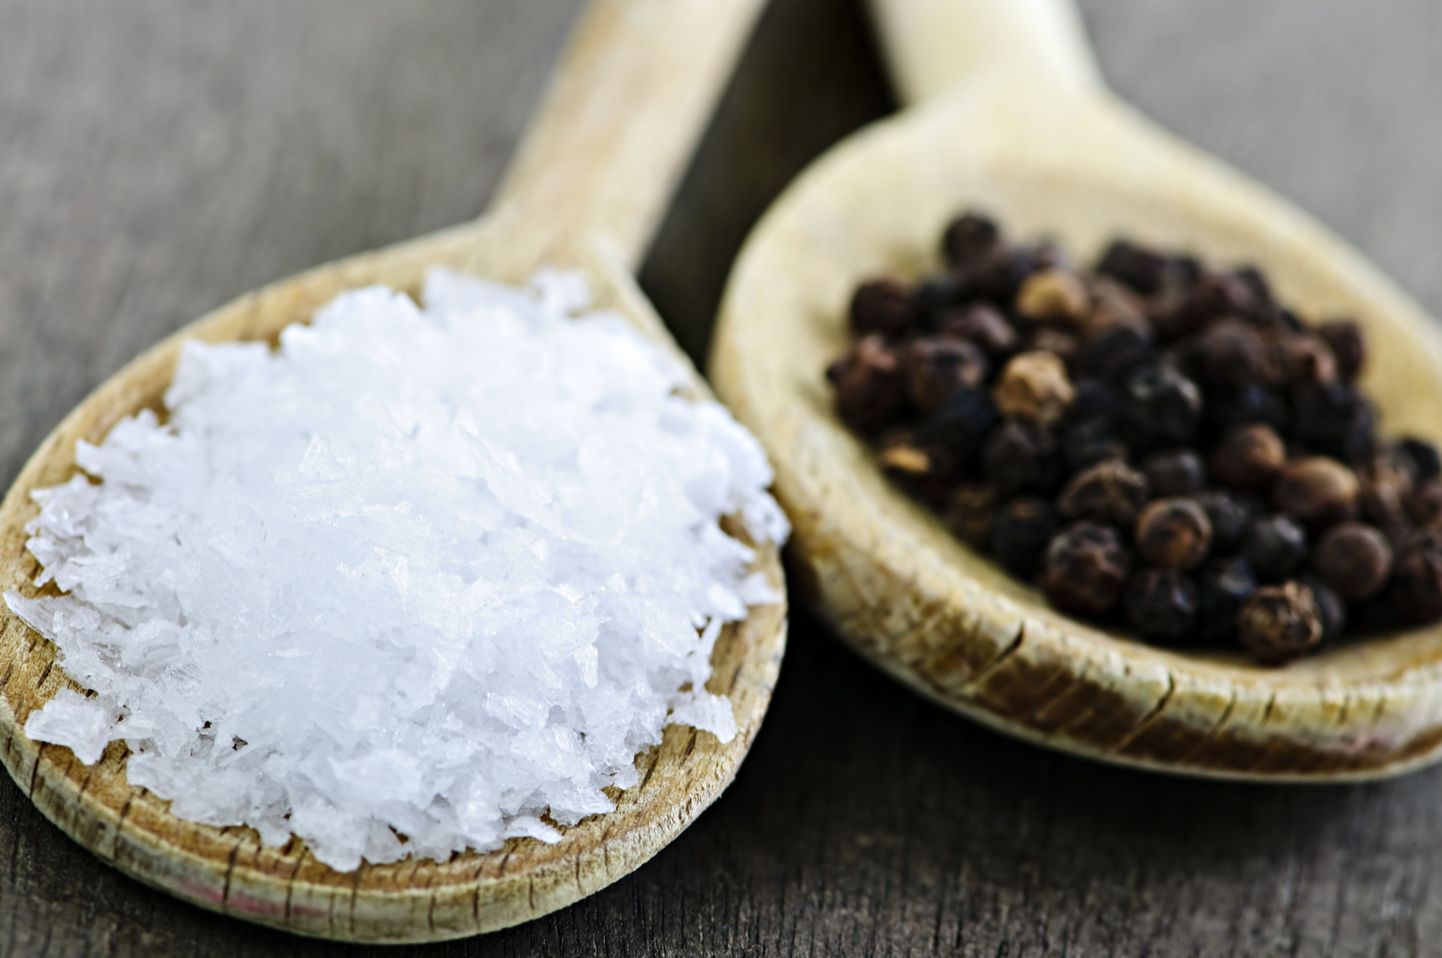 Erksa maitsemeelega inimesed söövad rohkem soola, et neutraliseerida teisi ebameeldivaid maitseid.